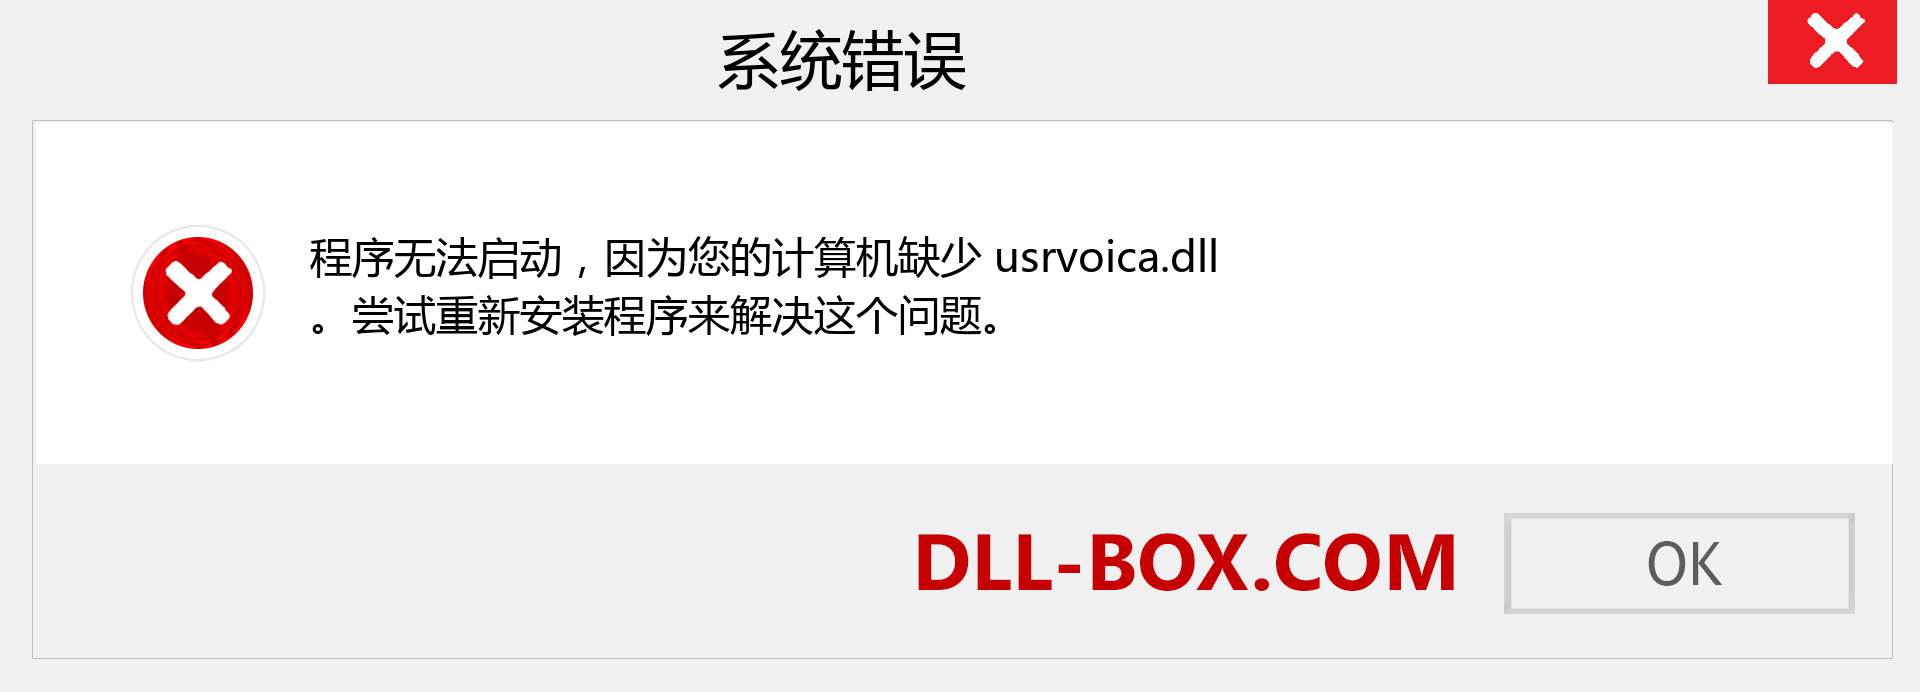 usrvoica.dll 文件丢失？。 适用于 Windows 7、8、10 的下载 - 修复 Windows、照片、图像上的 usrvoica dll 丢失错误